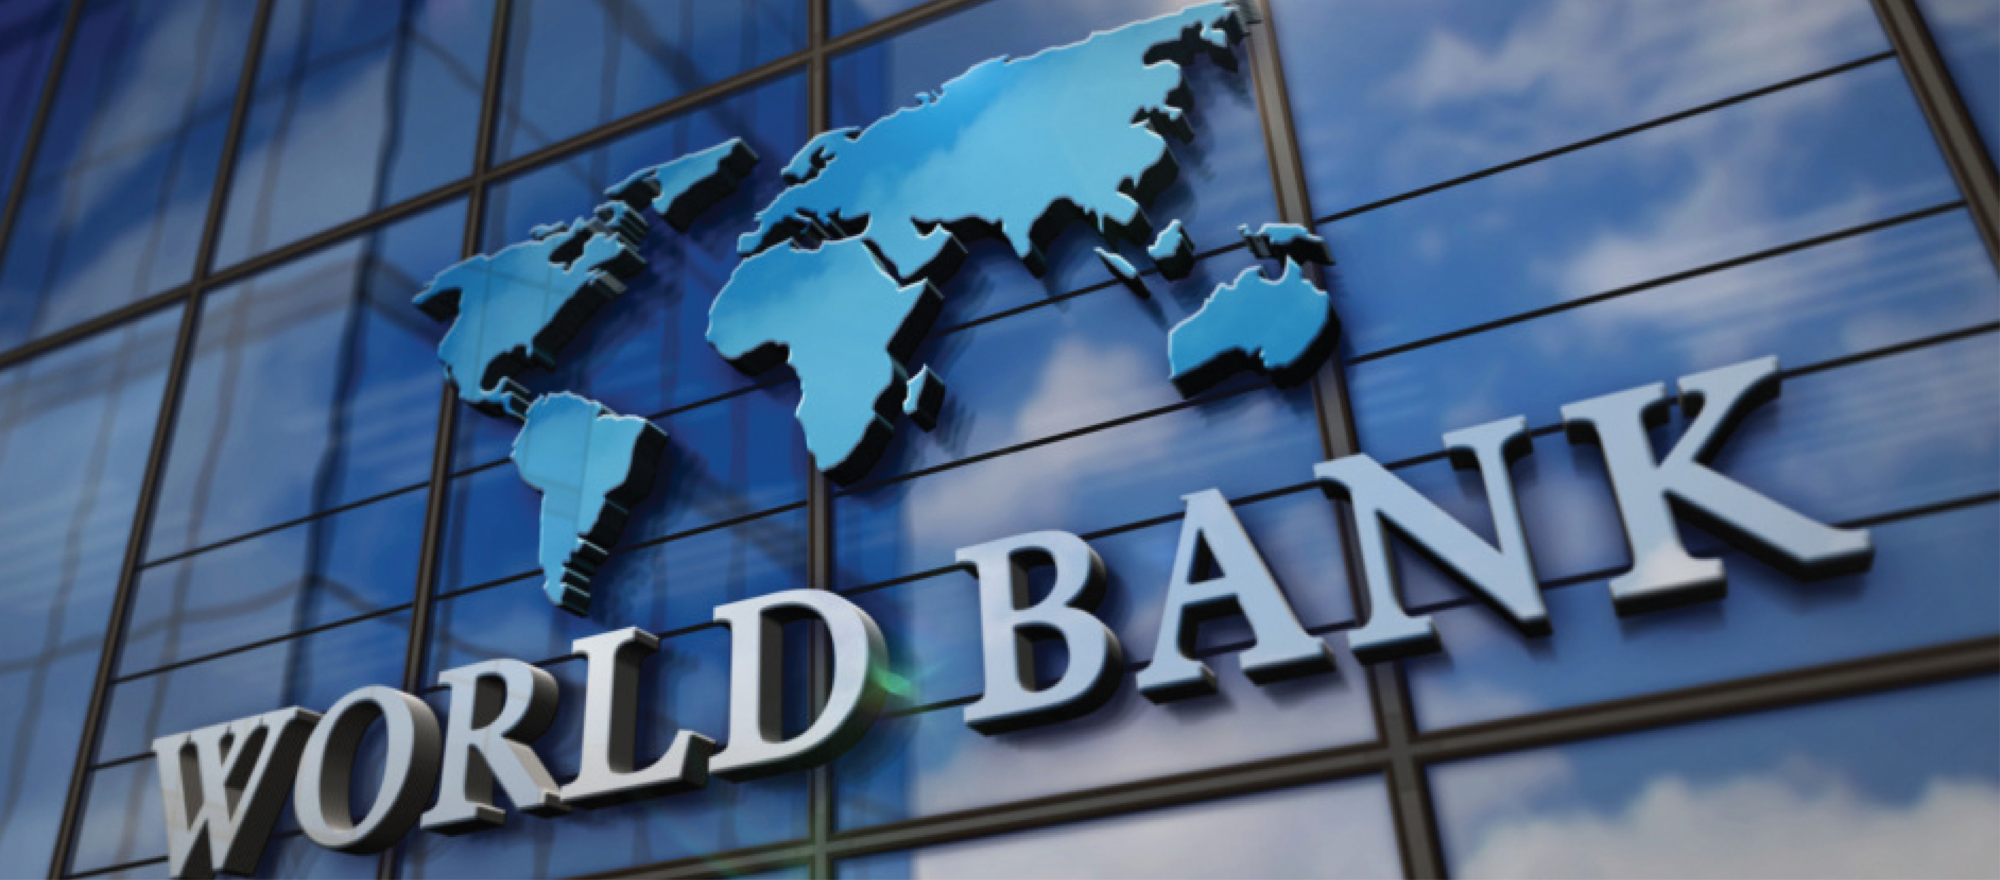 4 всемирный банк. Банк. Всемирного банка. Мировой банк. Всемирный банк Украина.